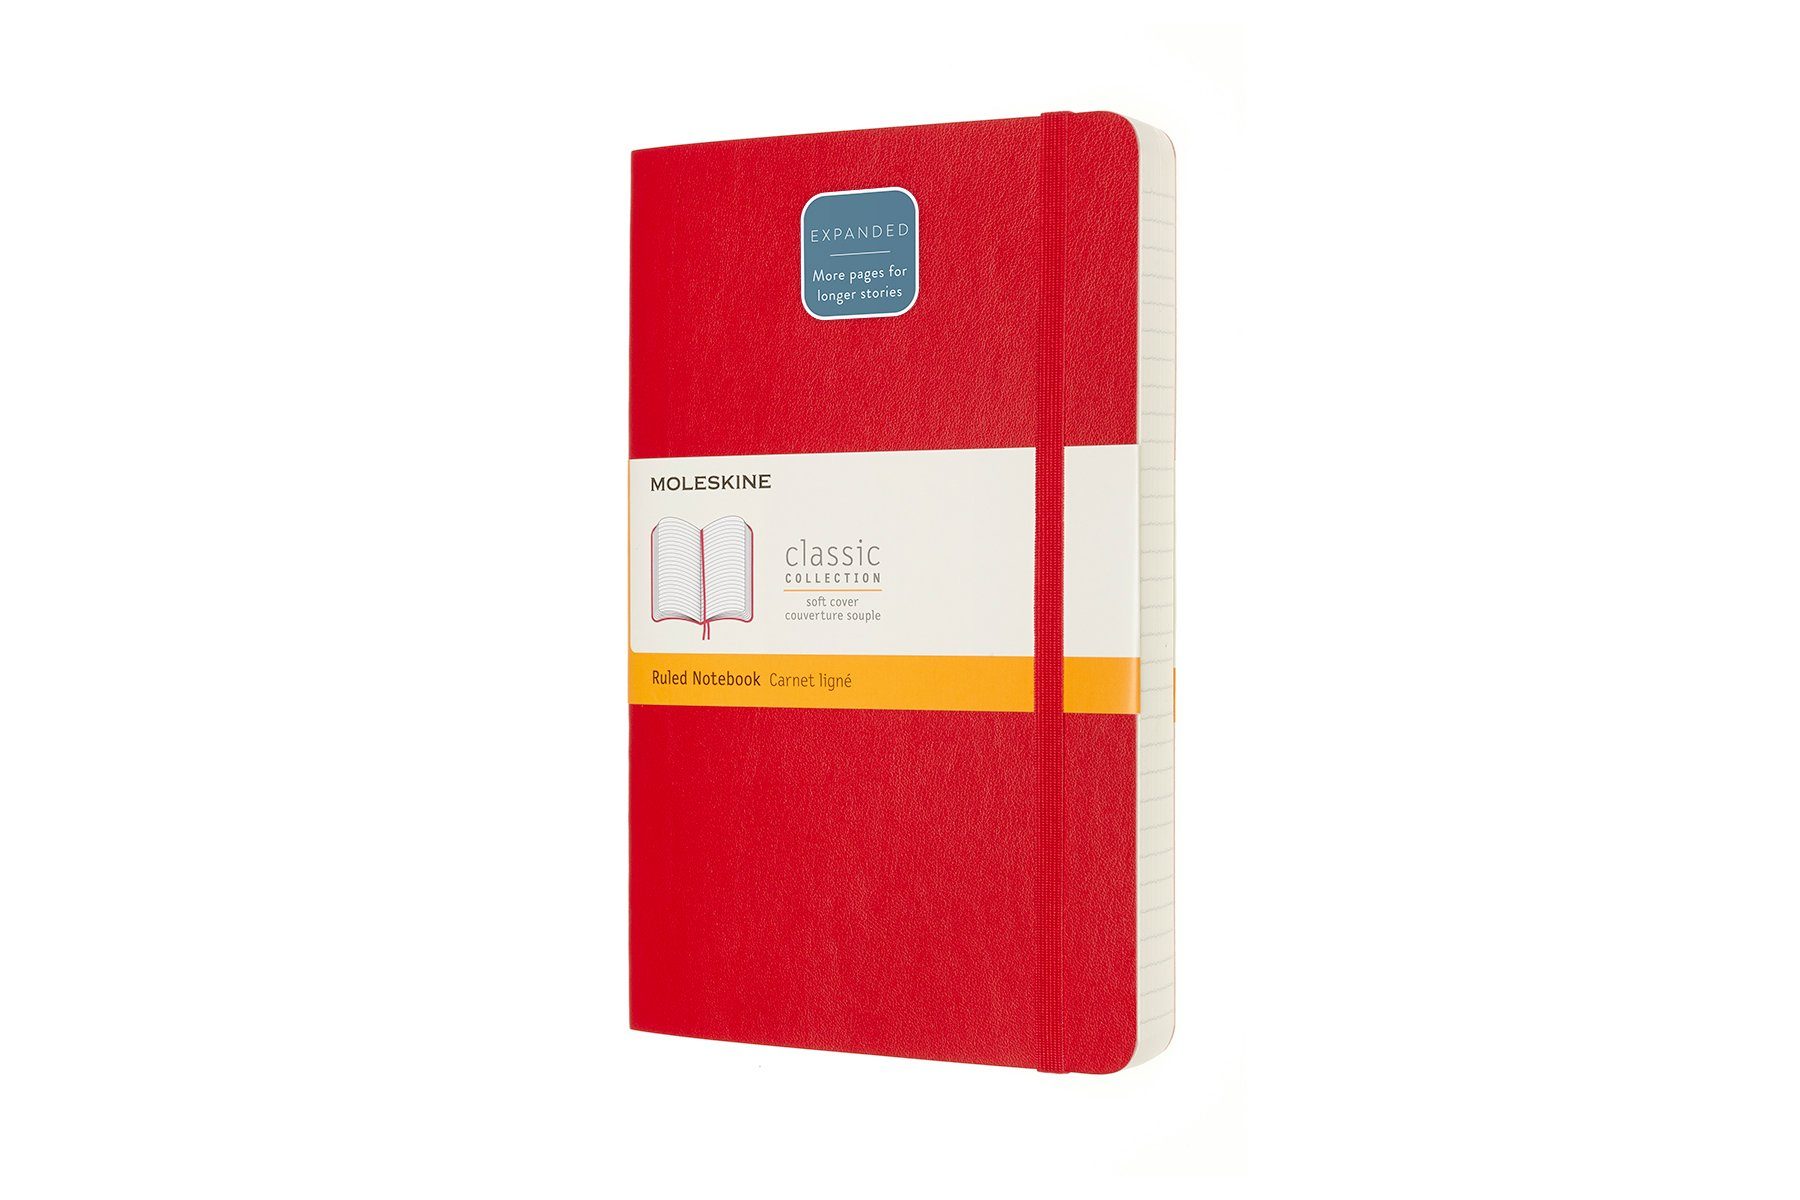 Einband weichem Liniert - Expanded - - - mit Soft Classic Notizbuch, Groß Scharlachrot 70g-Papier Cover - (13x21) MOLESKINE